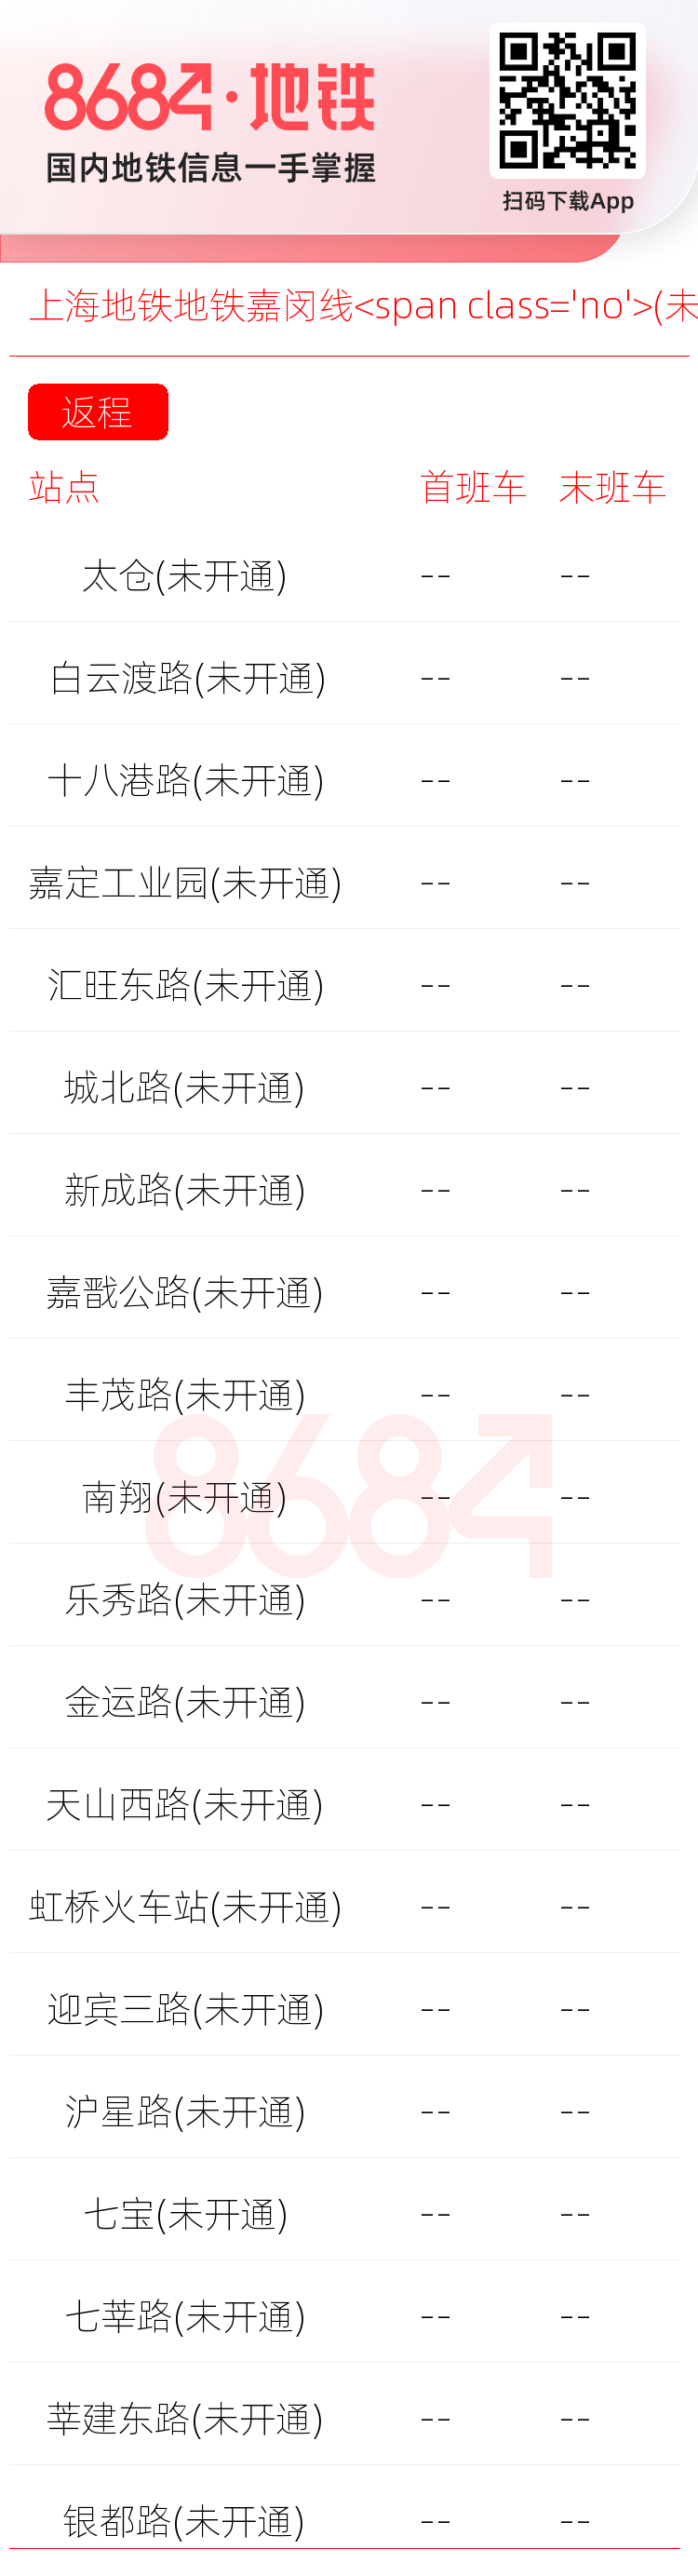 上海地铁地铁嘉闵线<span class='no'>(未开通)</span>运营时间表